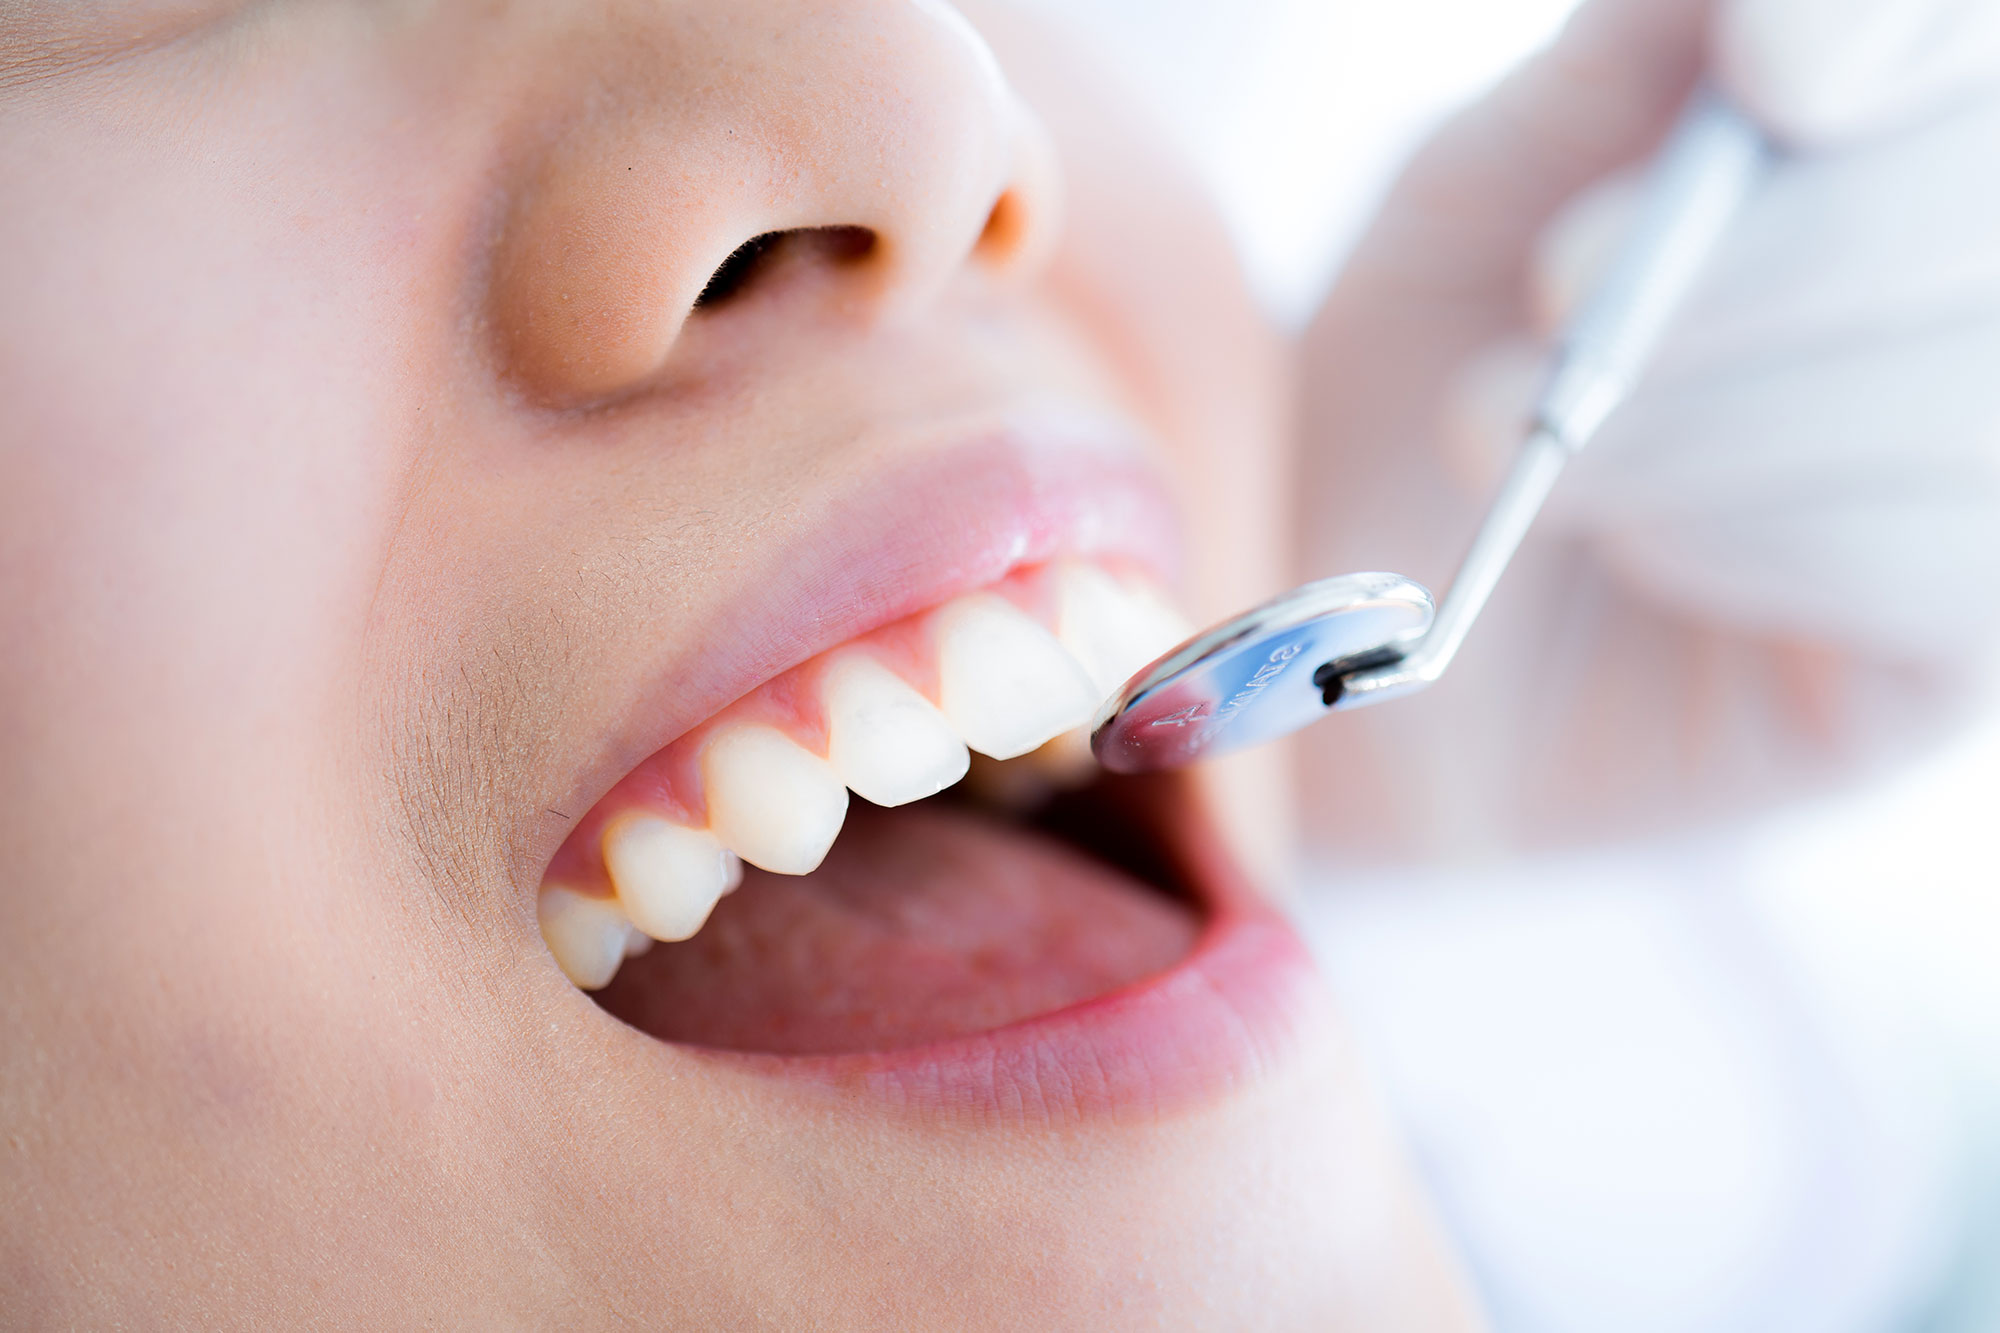 dental implants restored patients oral health Van Nuys, CA